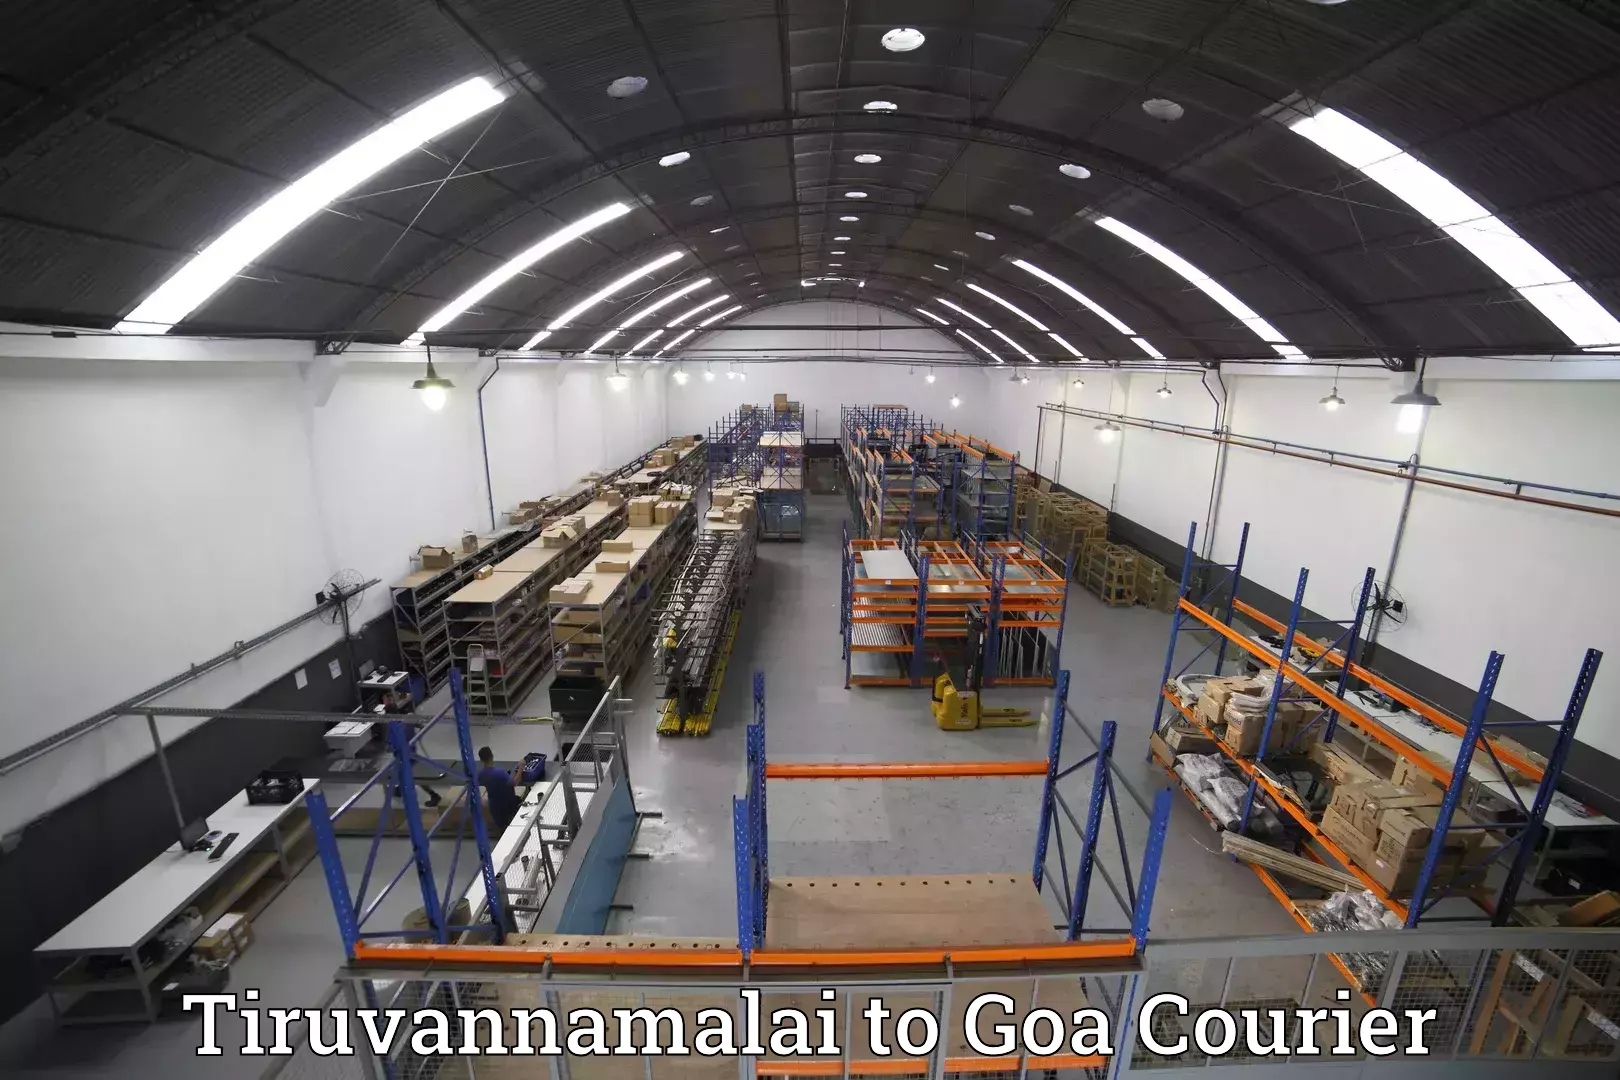 Luggage delivery estimate Tiruvannamalai to NIT Goa